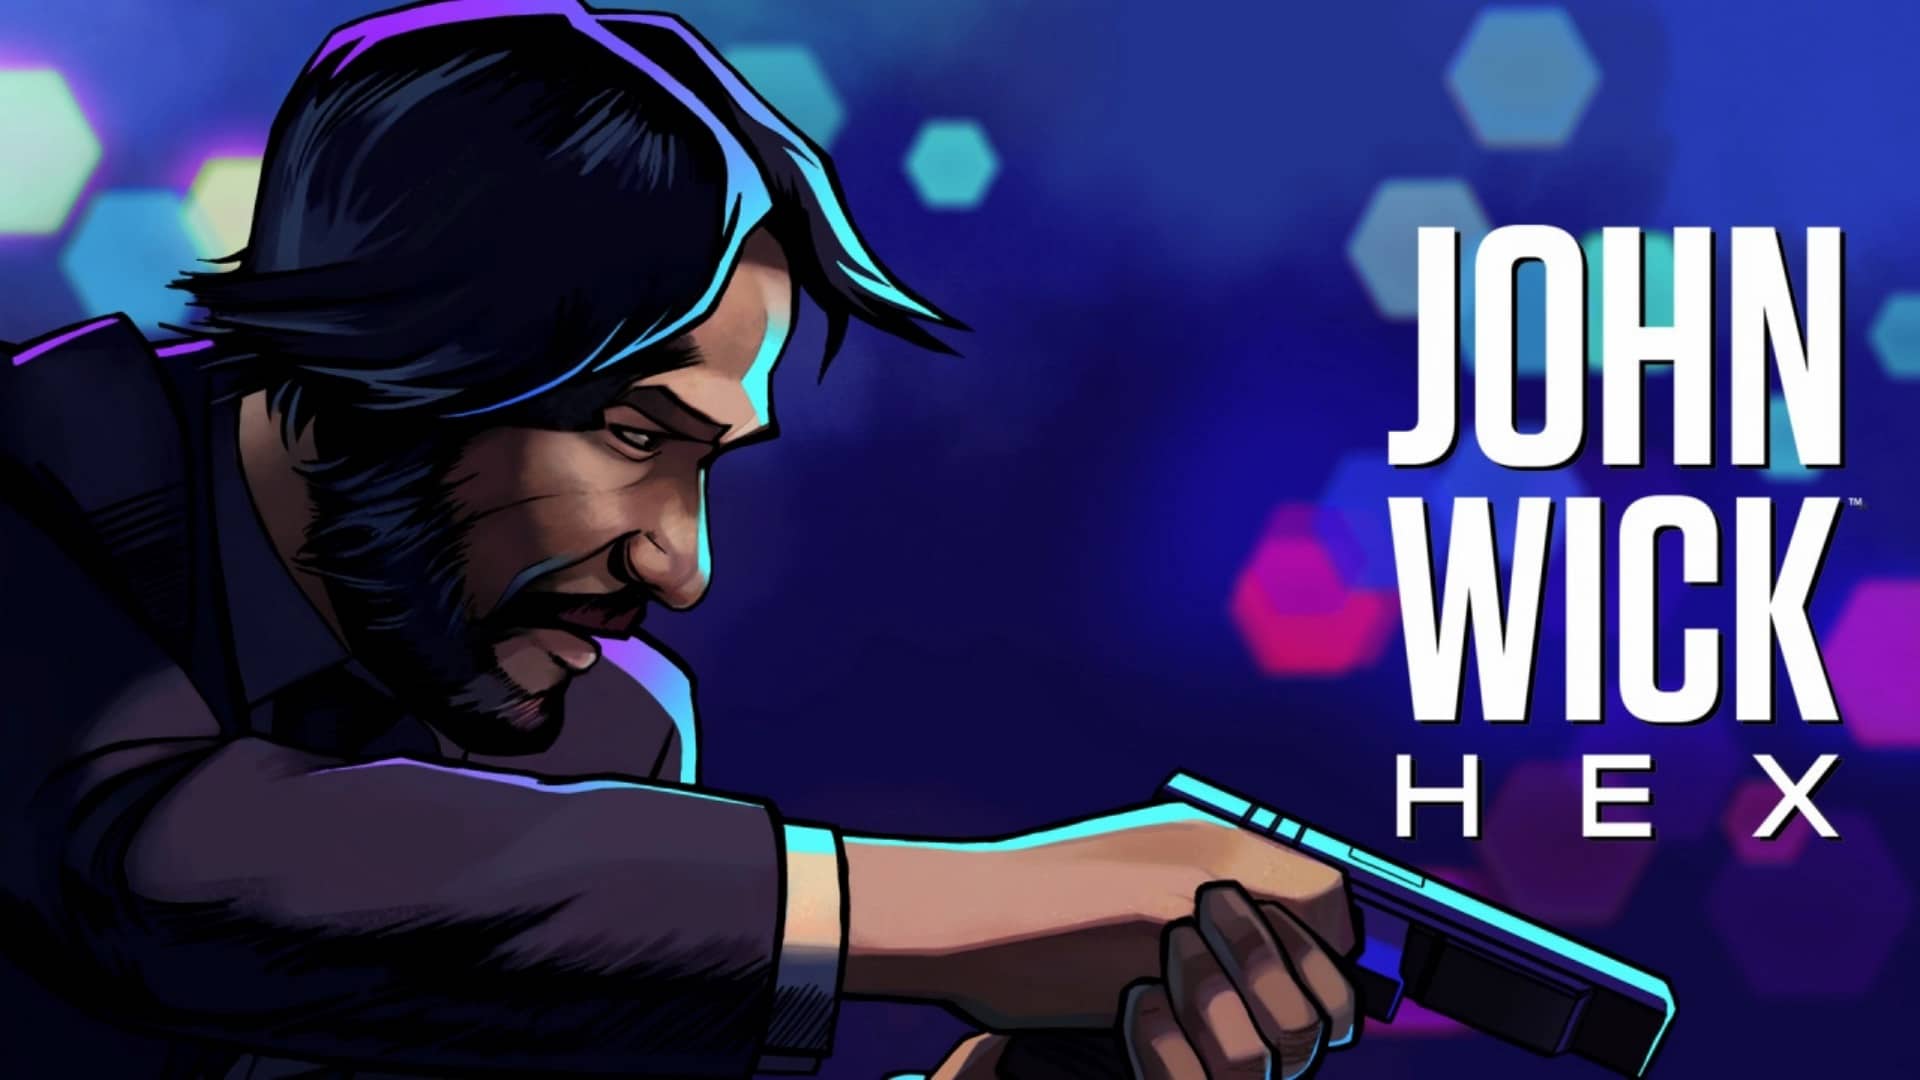 John Wick Hex aparece listado para el 4 de diciembre en la eShop de Nintendo Switch